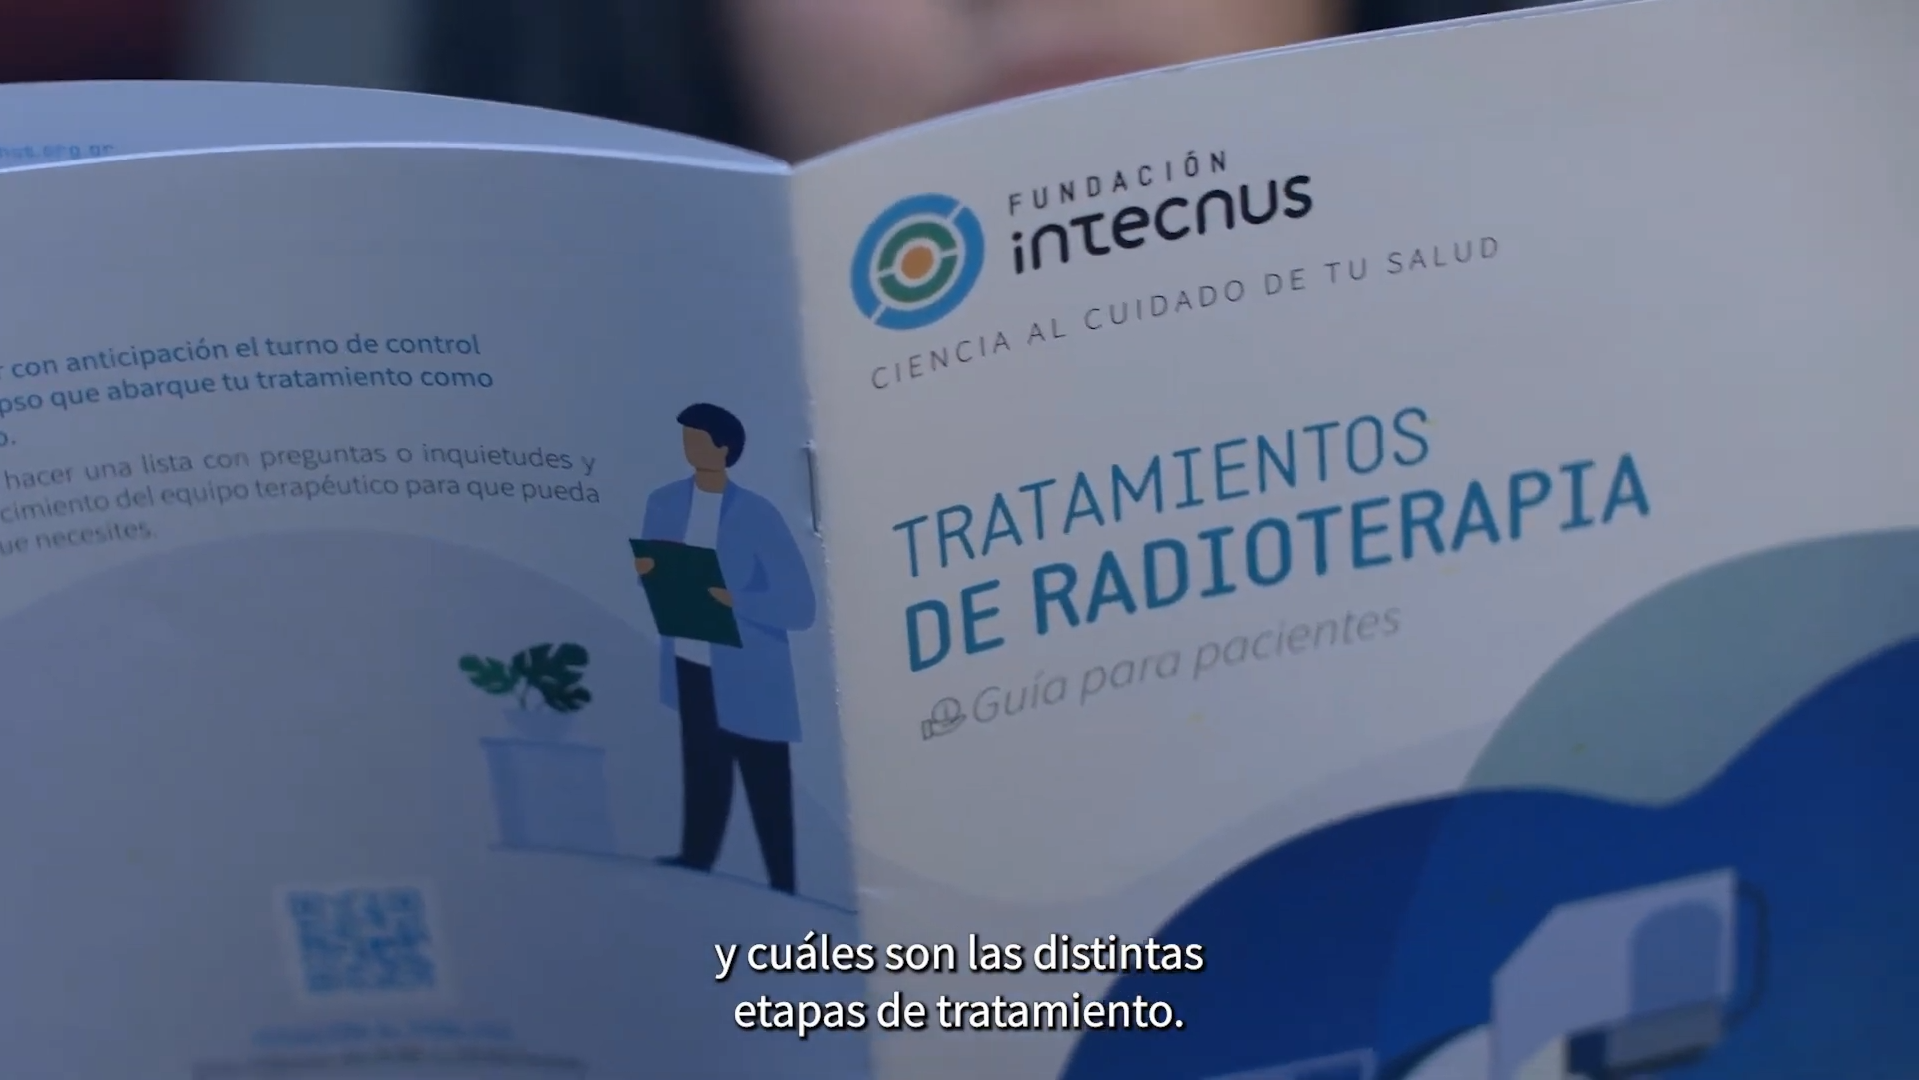 Servicio de Radioterapia de Fundación Intecnus